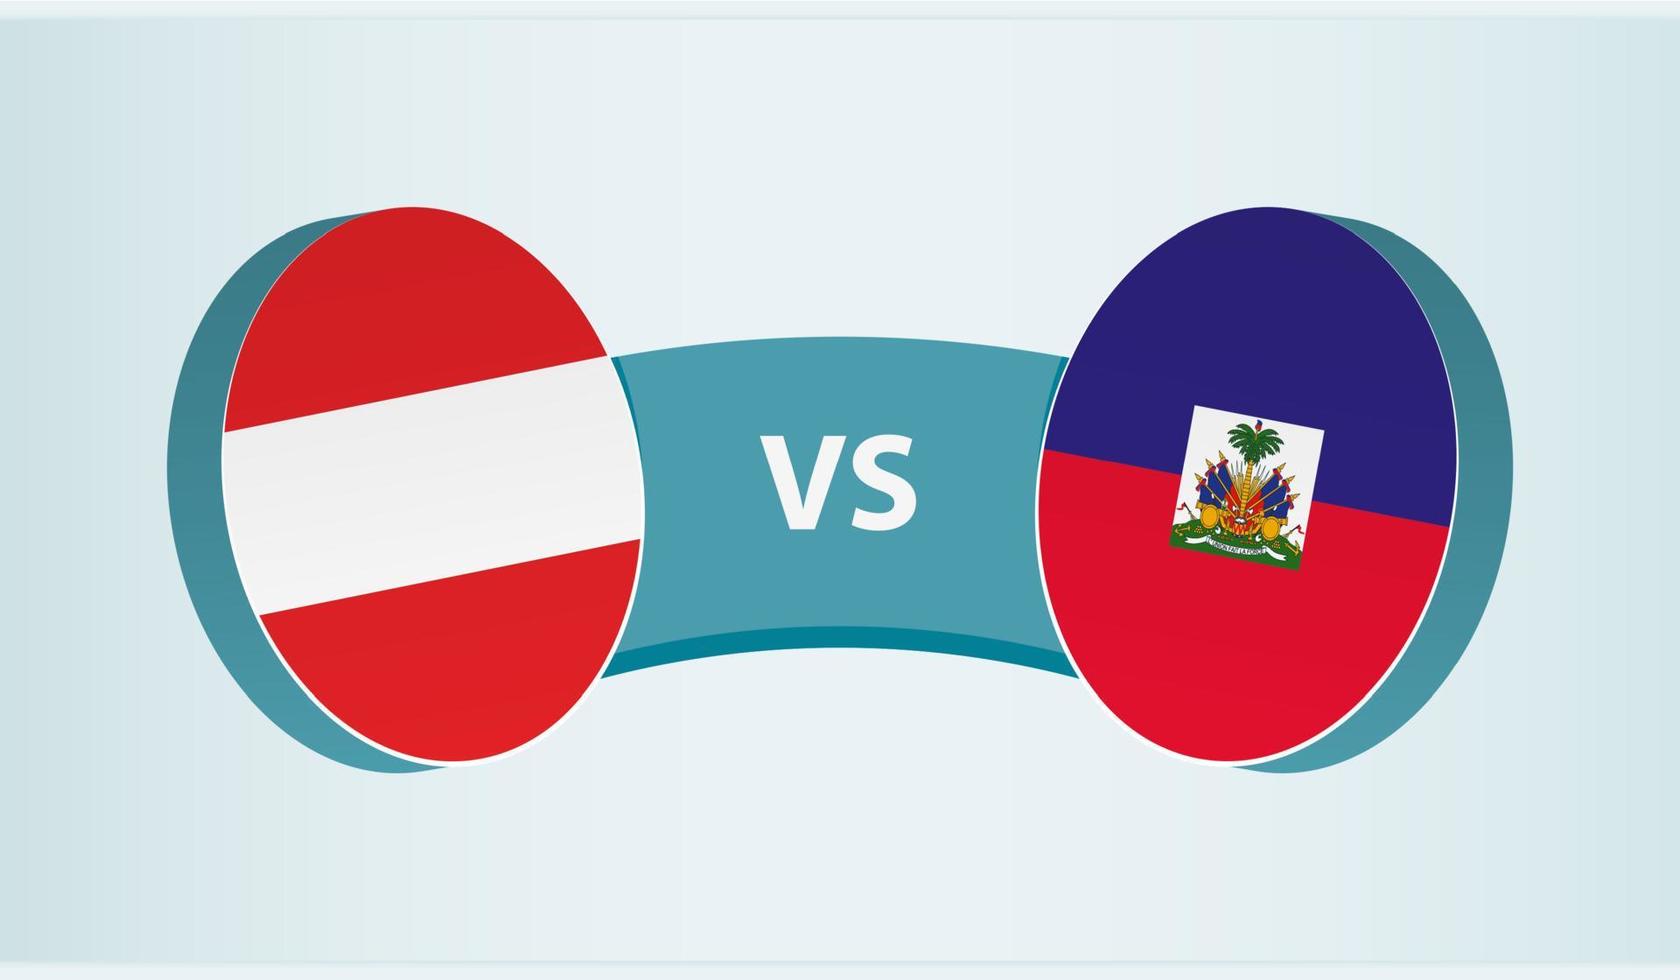 österrike mot haiti, team sporter konkurrens begrepp. vektor